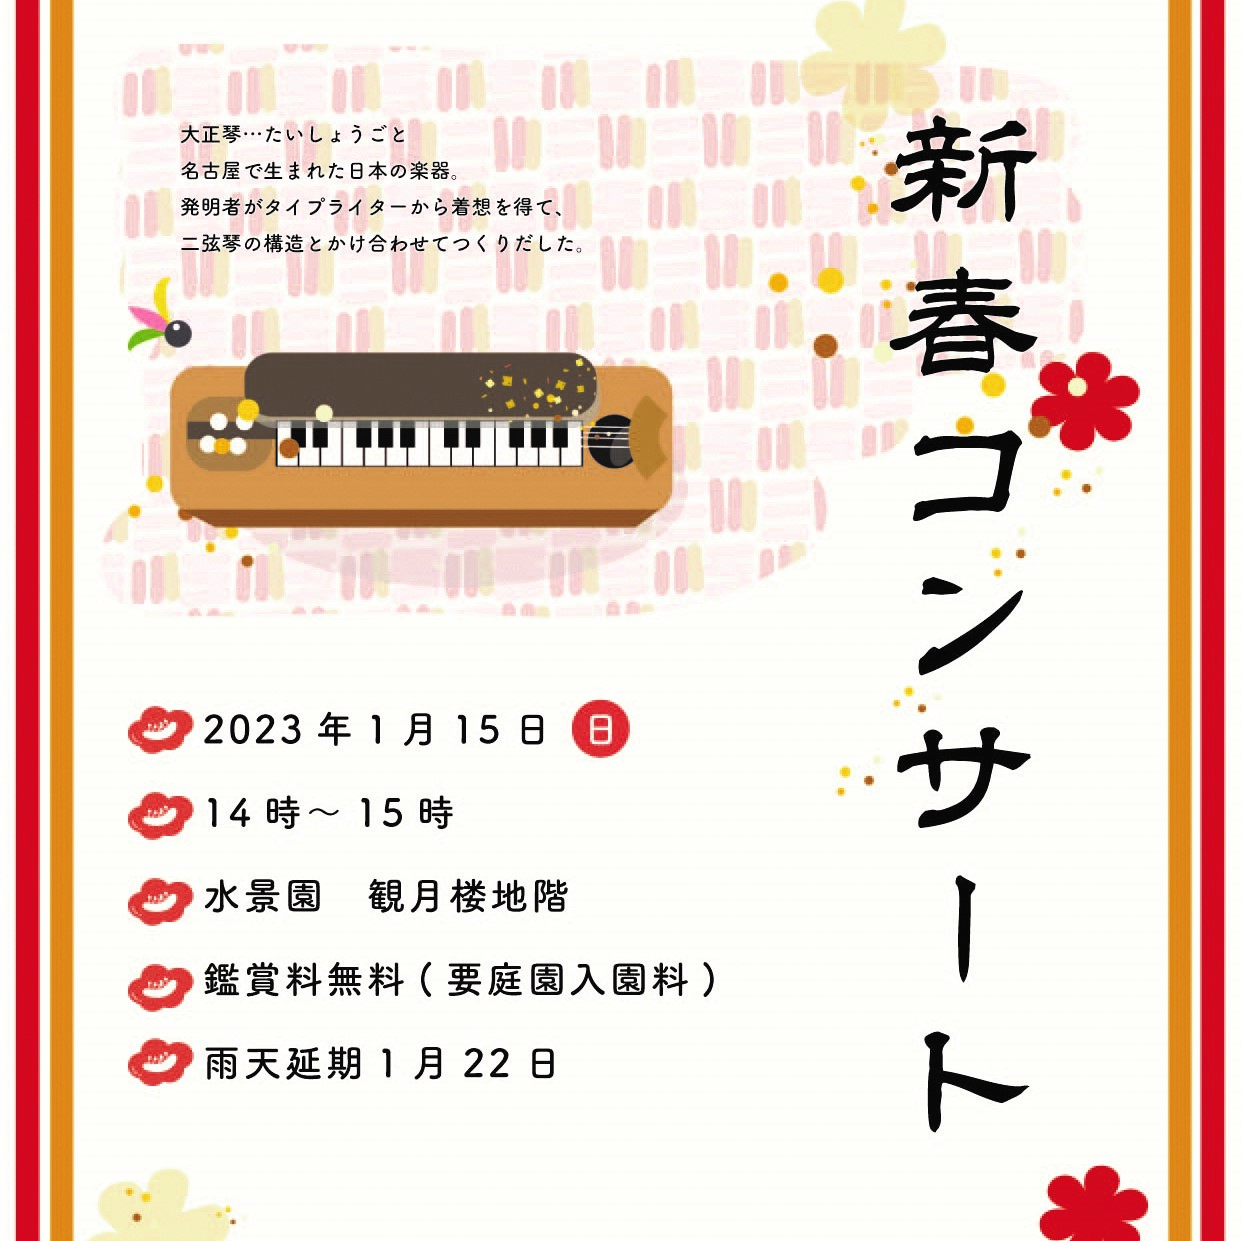 【1月15日】新春コンサート 大正琴のアンサンブル